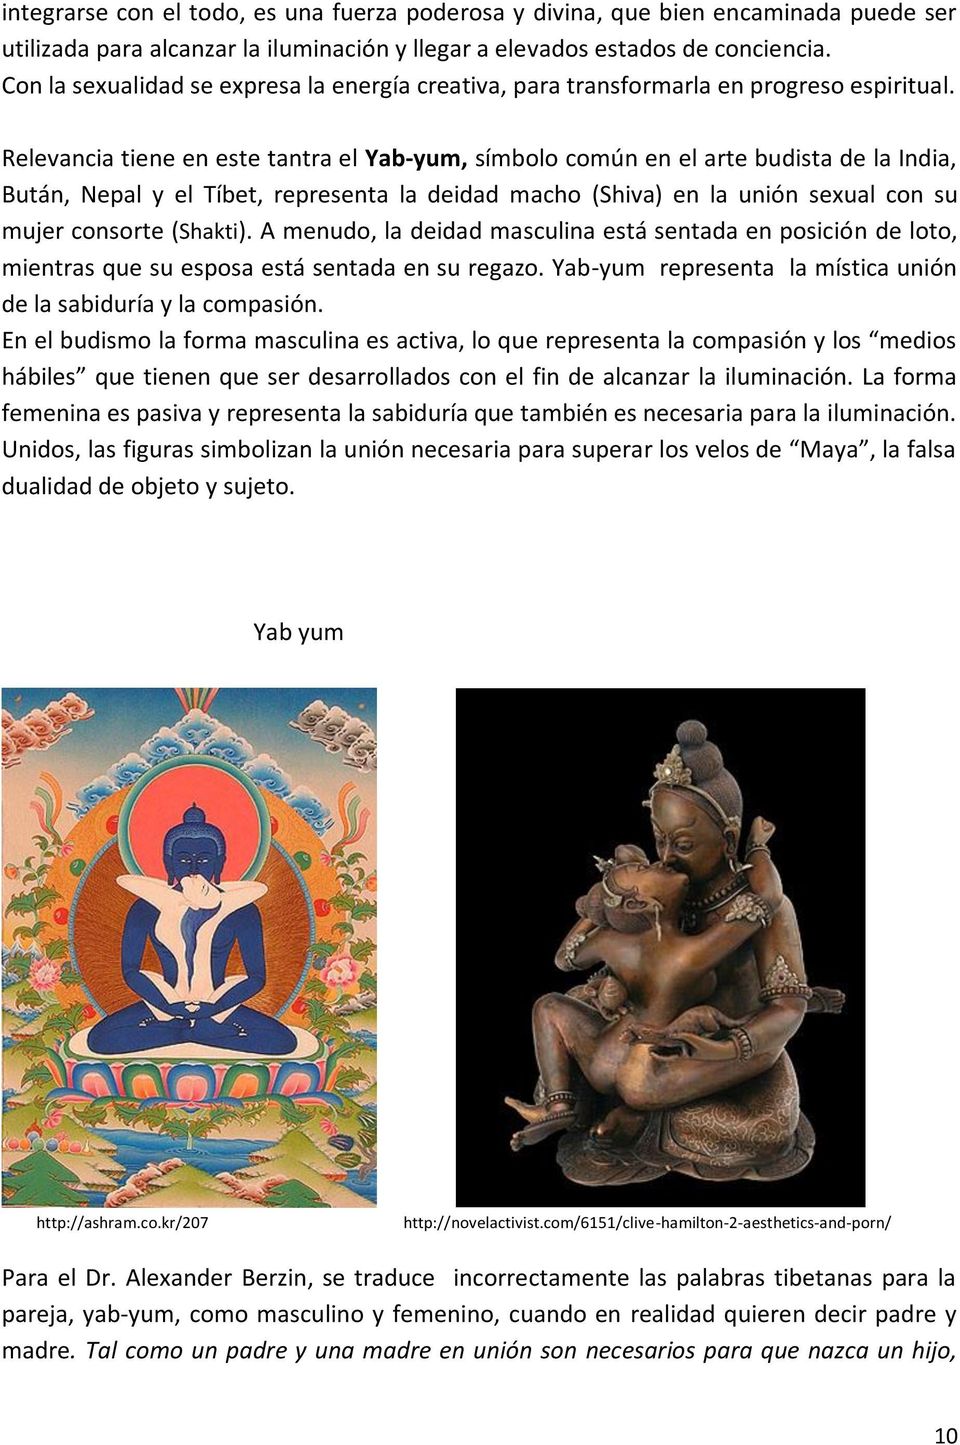 Relevancia tiene en este tantra el Yab-yum, símbolo común en el arte budista de la India, Bután, Nepal y el Tíbet, representa la deidad macho (Shiva) en la unión sexual con su mujer consorte (Shakti).